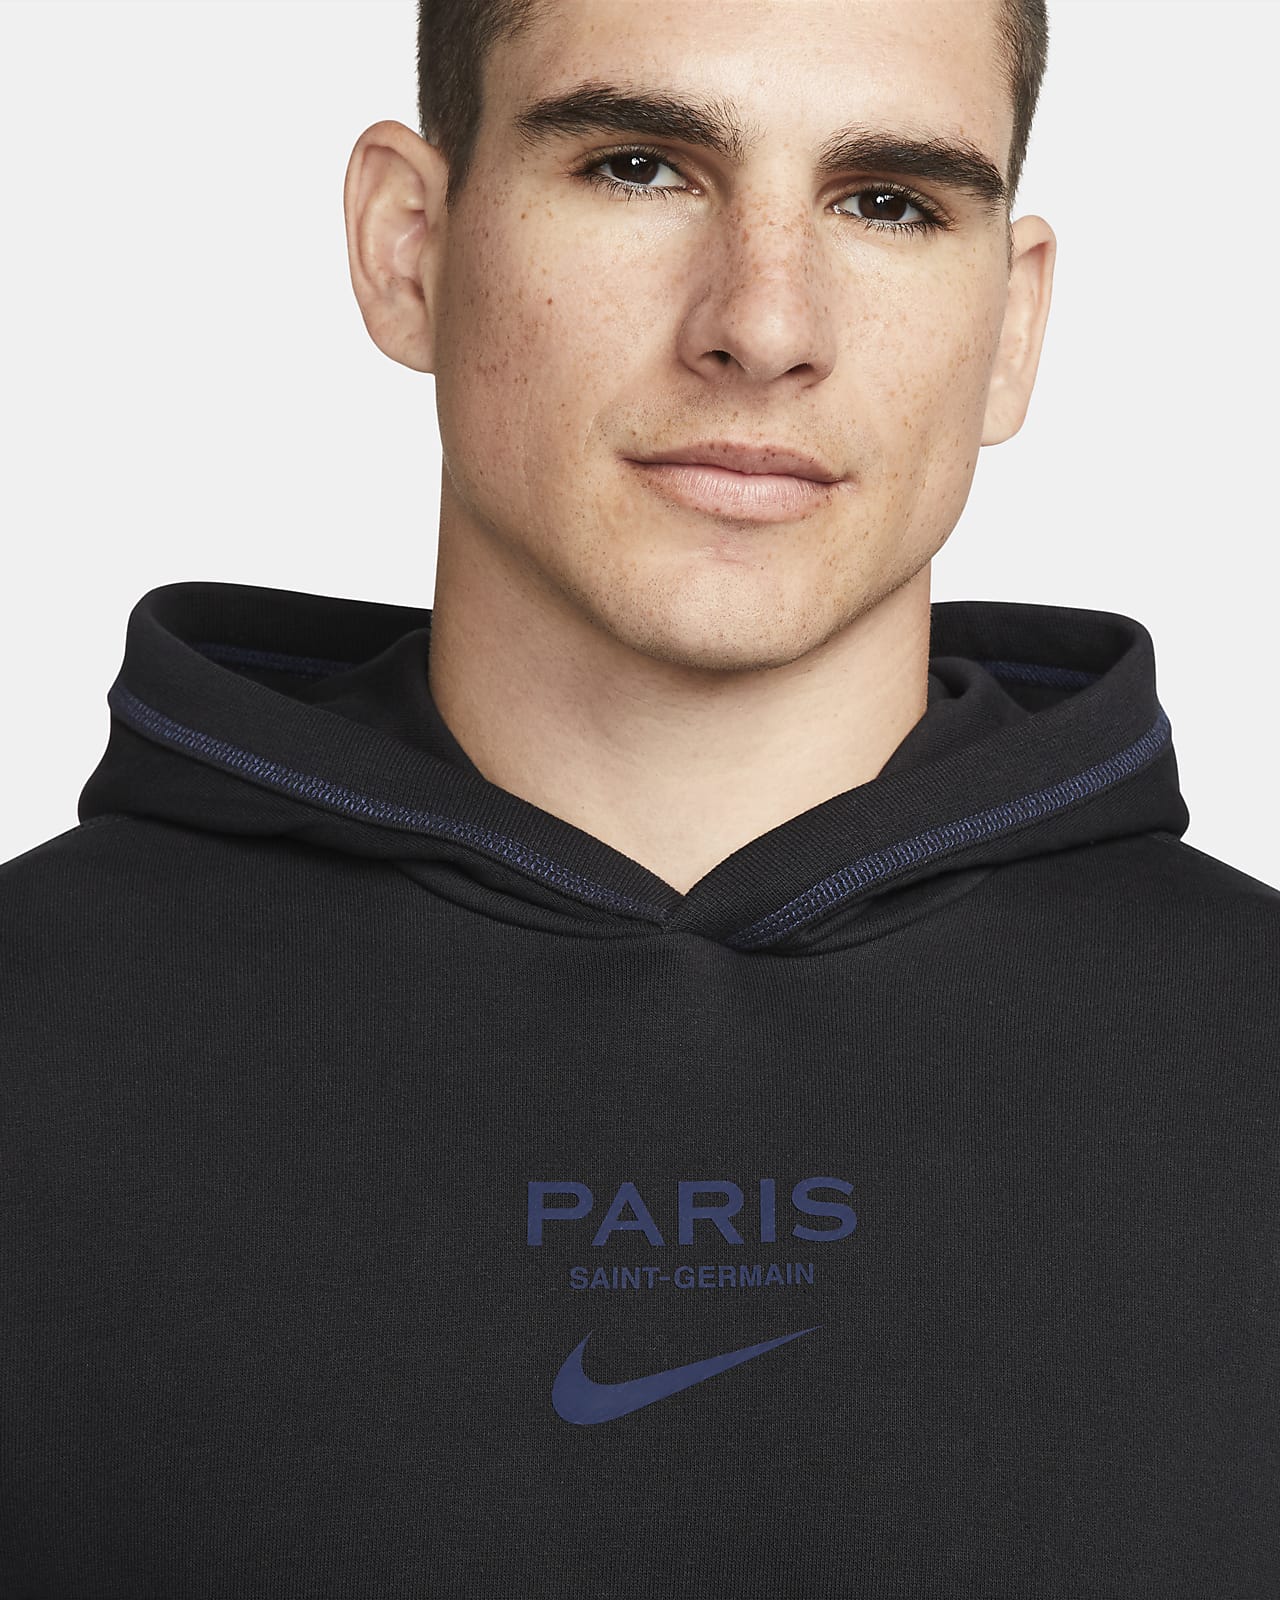 Op en neer gaan Cataract operatie Paris Saint-Germain Men's Football Hoodie. Nike LU